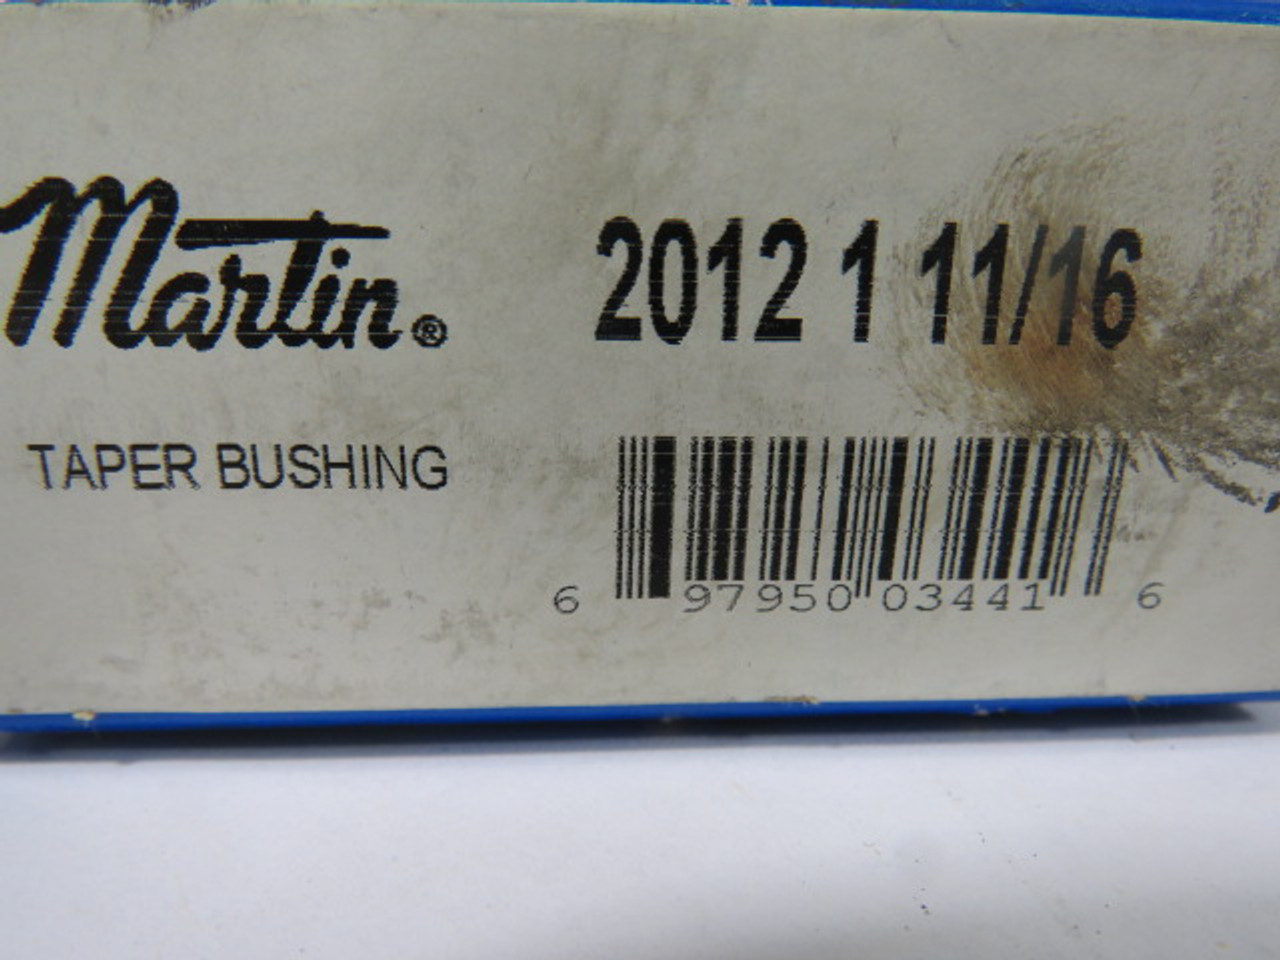 Martin 2012-1-11/16 Taper Lock Bushing 2.75" OD 1.6875" B 1.25" LTB  ! NEW !